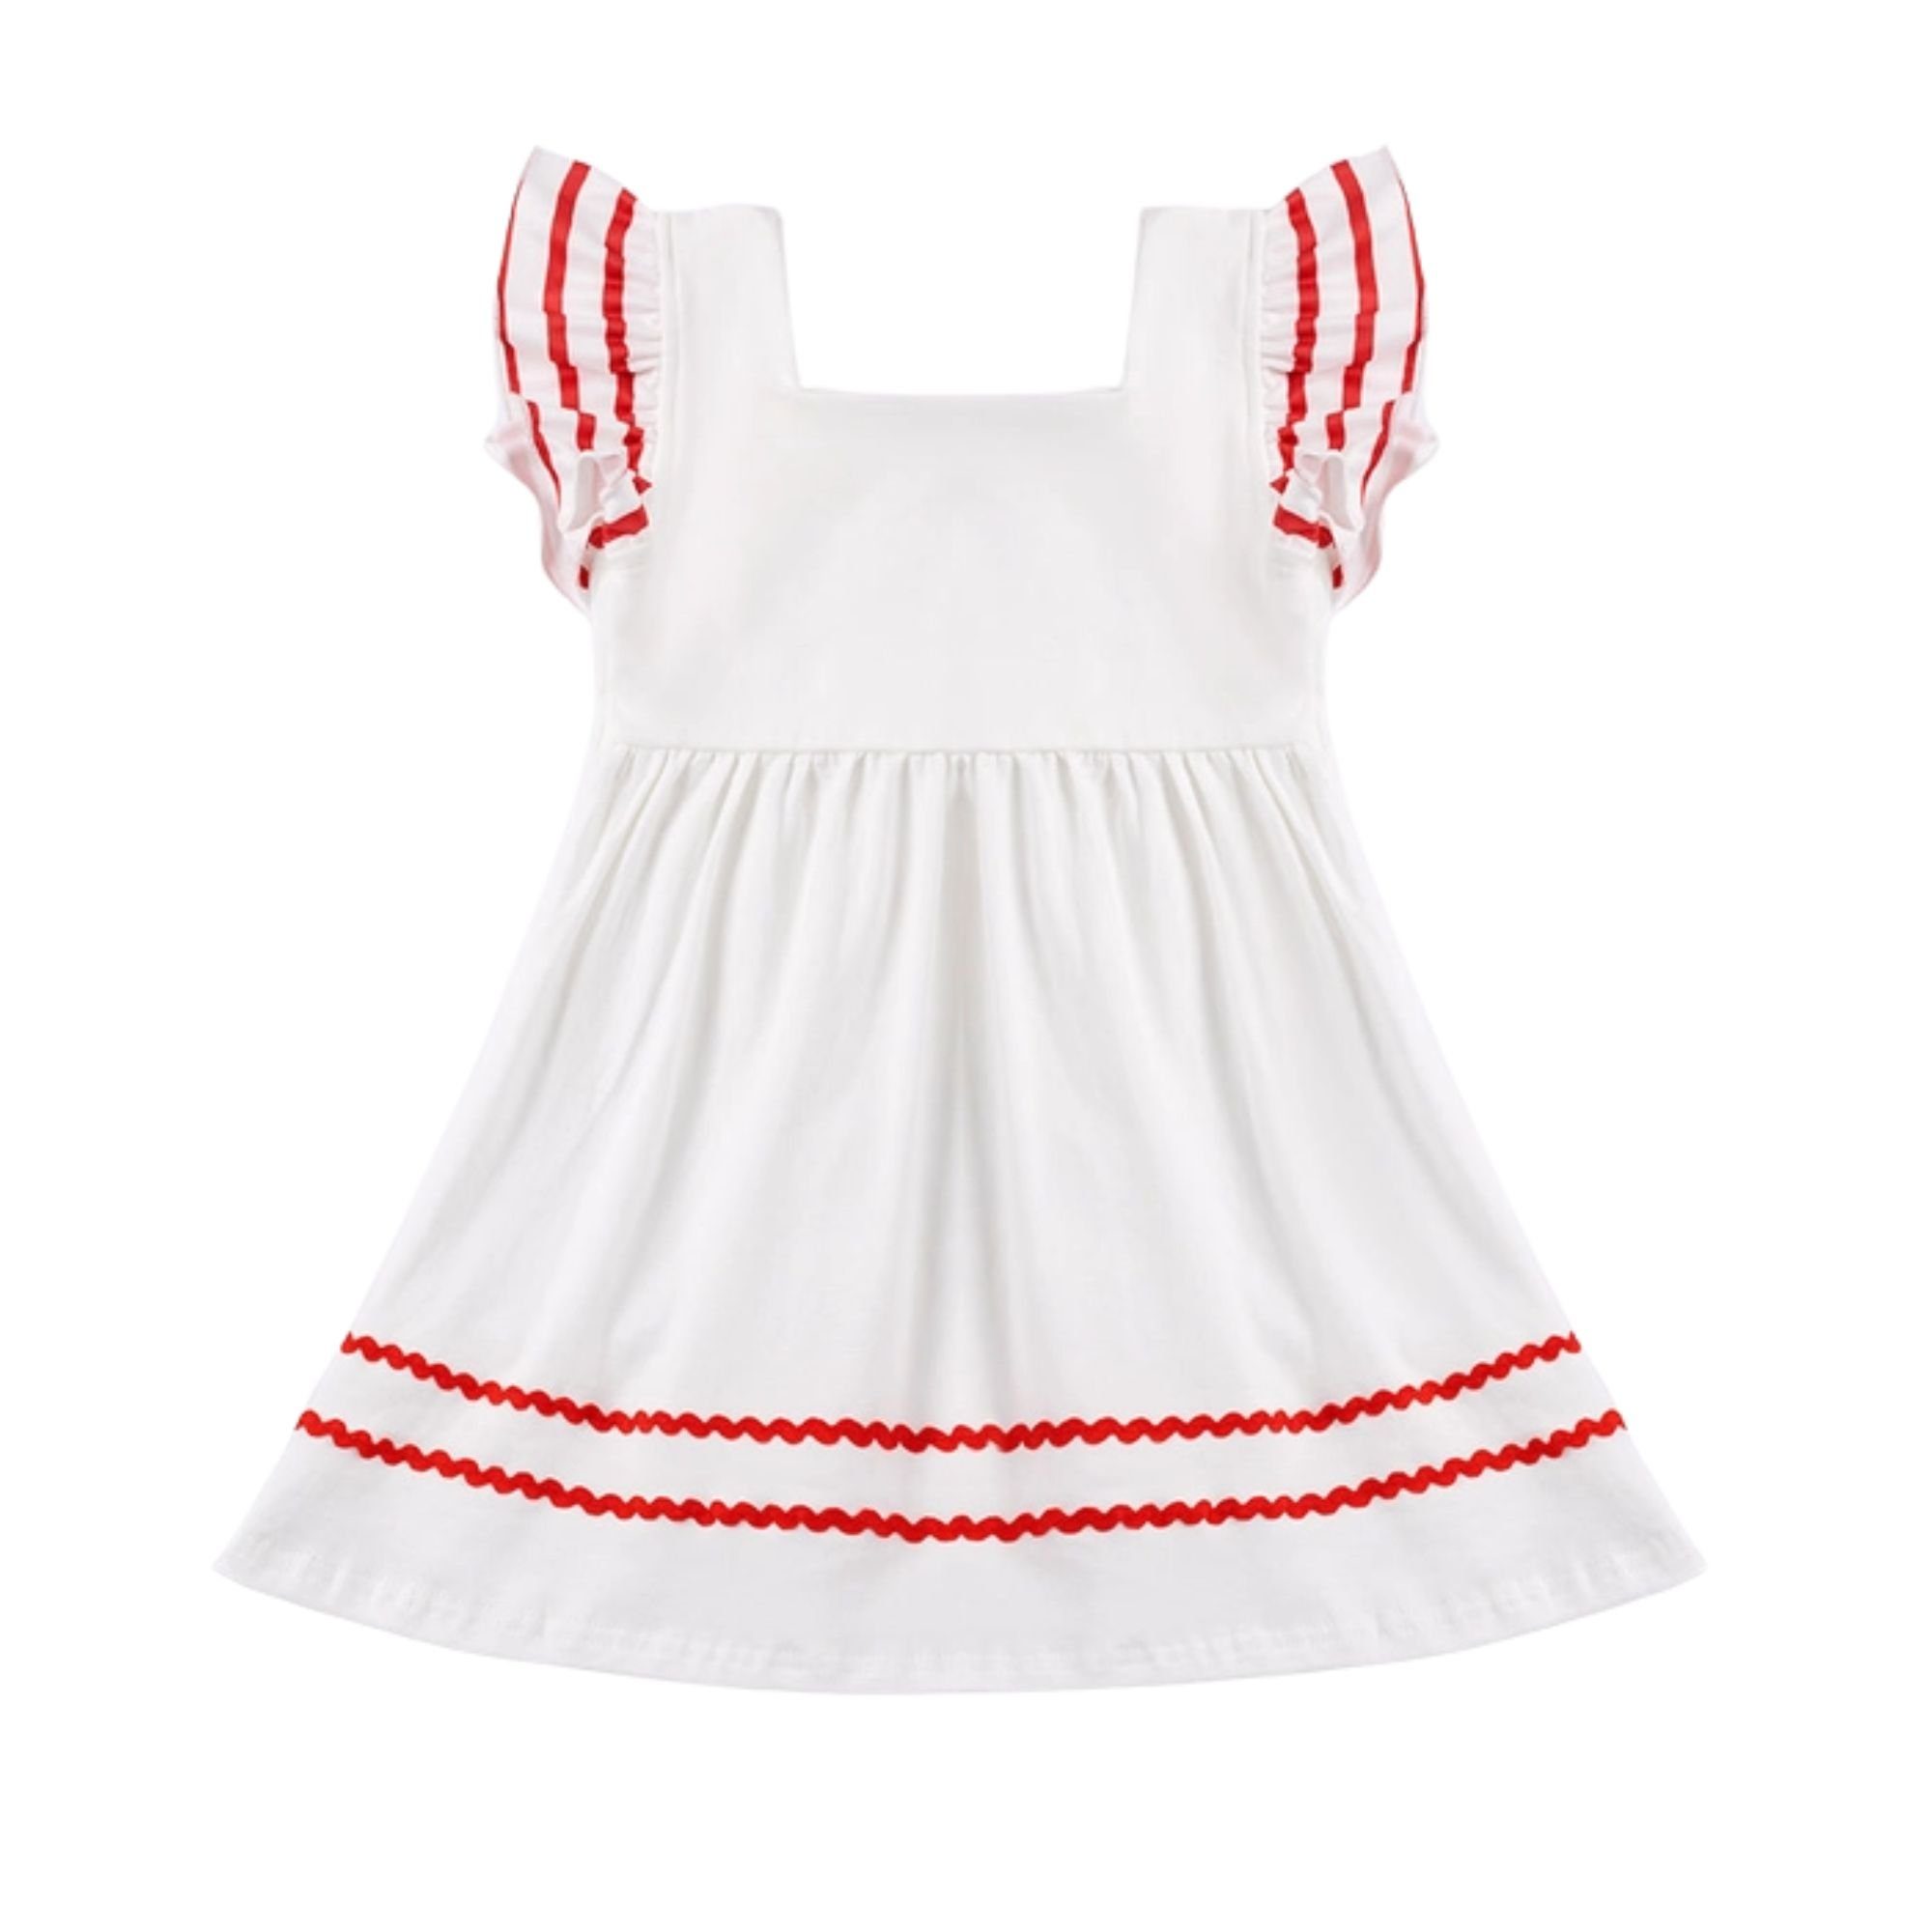 suebidou Midikleid für Kleid Mädchen weiß Sommerkleid Rüschenkleid Kontrastnähte ausgestellt